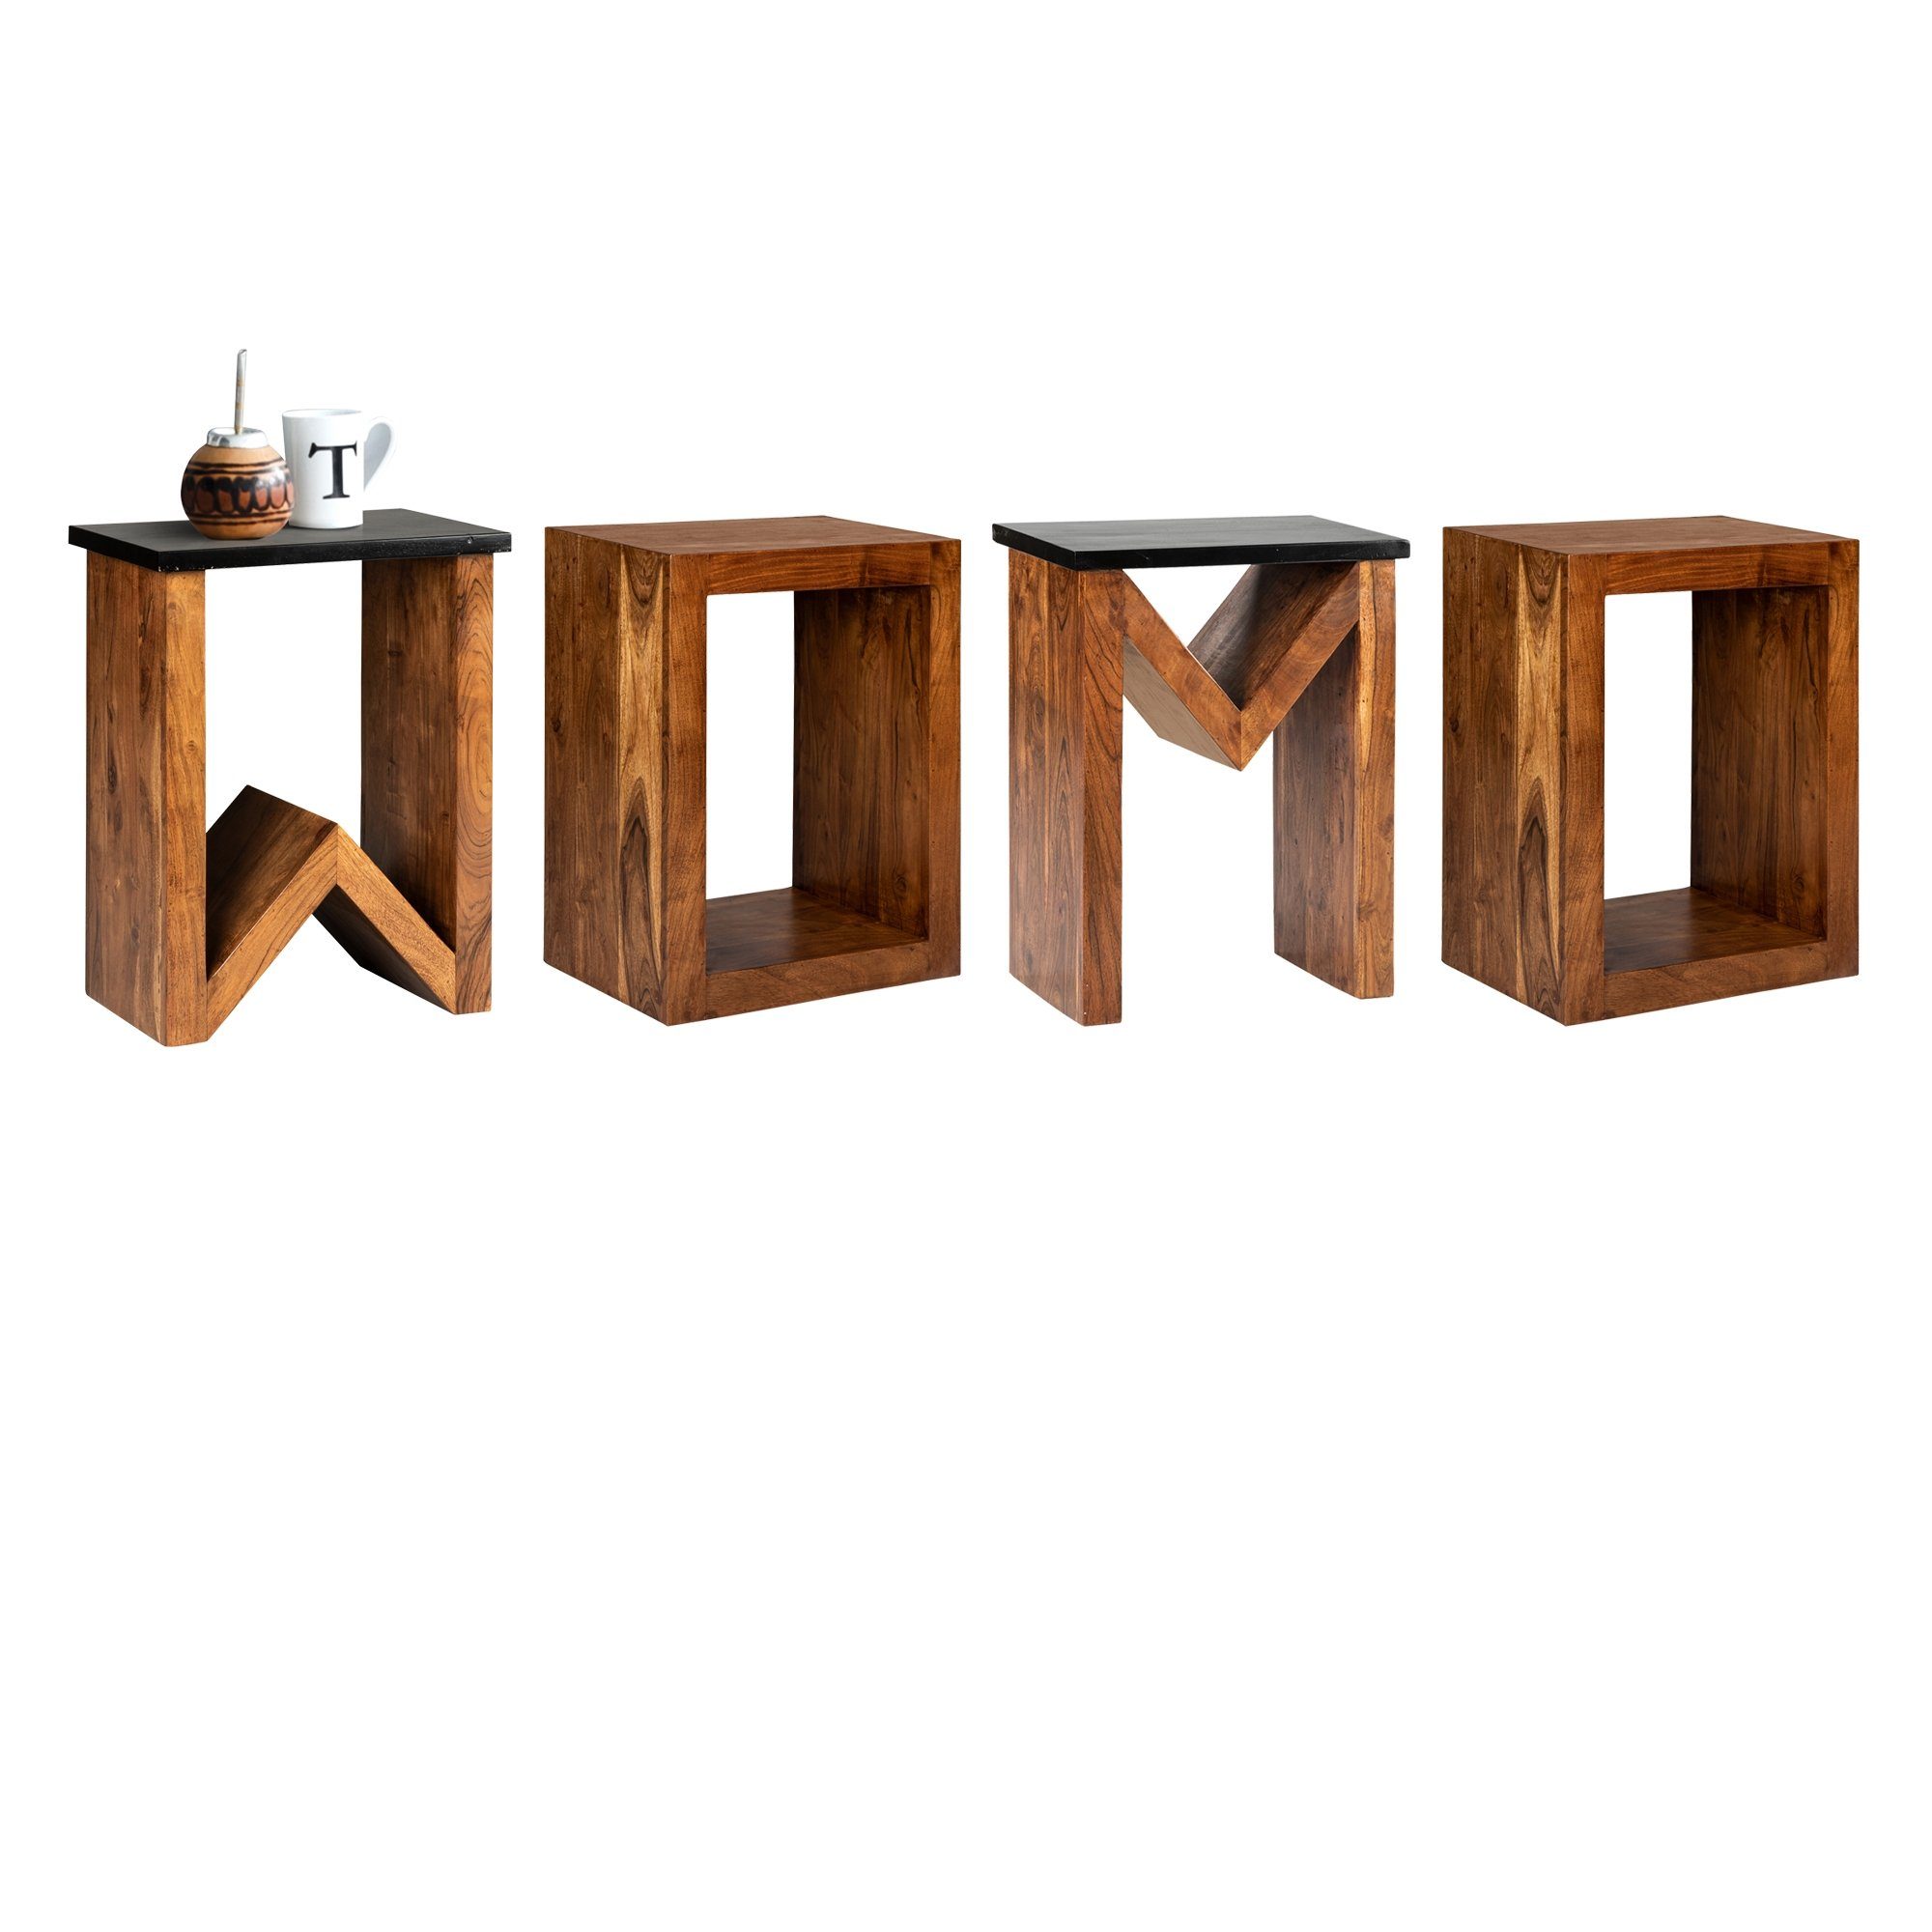 Braun handgefertigt Loungetisch Holztisch, Unikat Akazienholz 60cm Kaffeetisch Wohnzimmertisch Sofatisch D-Form Beistelltisch Massivholz WOMO-DESIGN